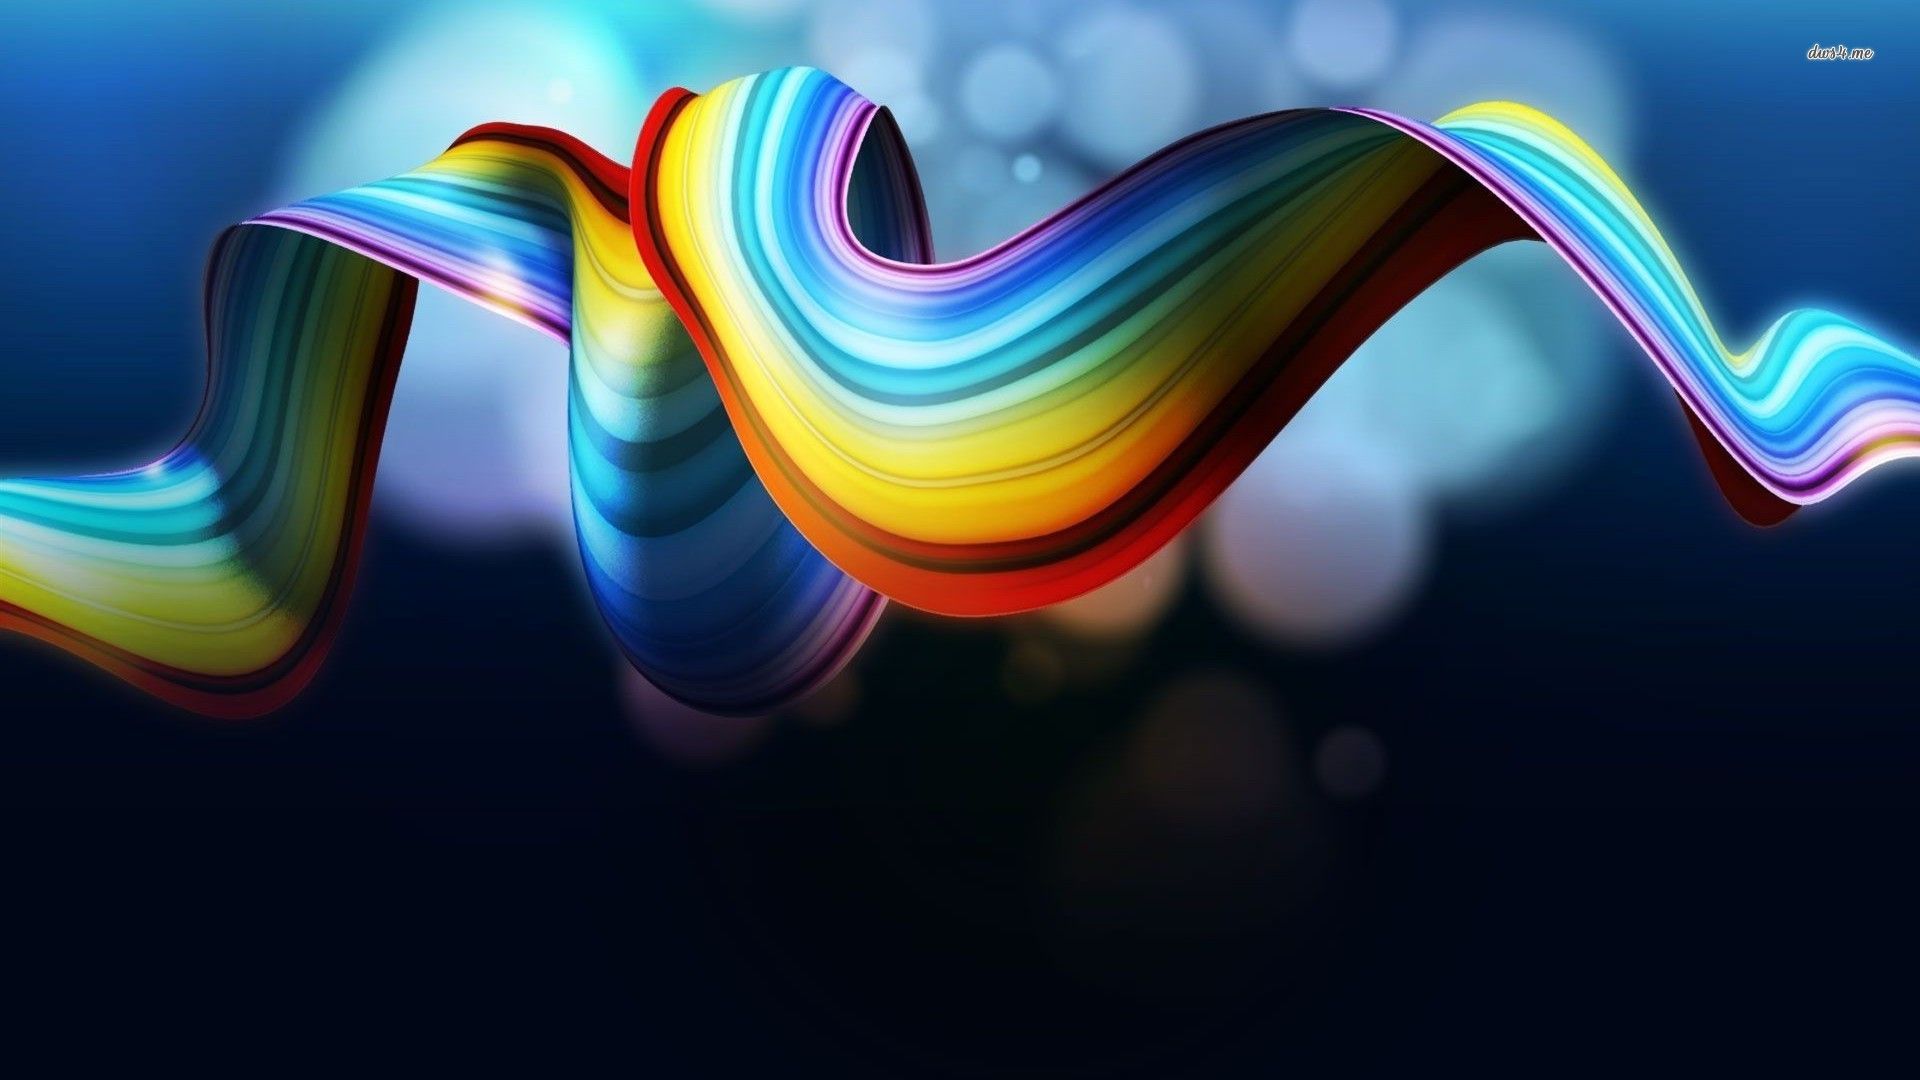 3D Rainbow Wallpaper For Mac #jcK. Rainbow wallpaper, Rainbow abstract, 3D wallpaper art